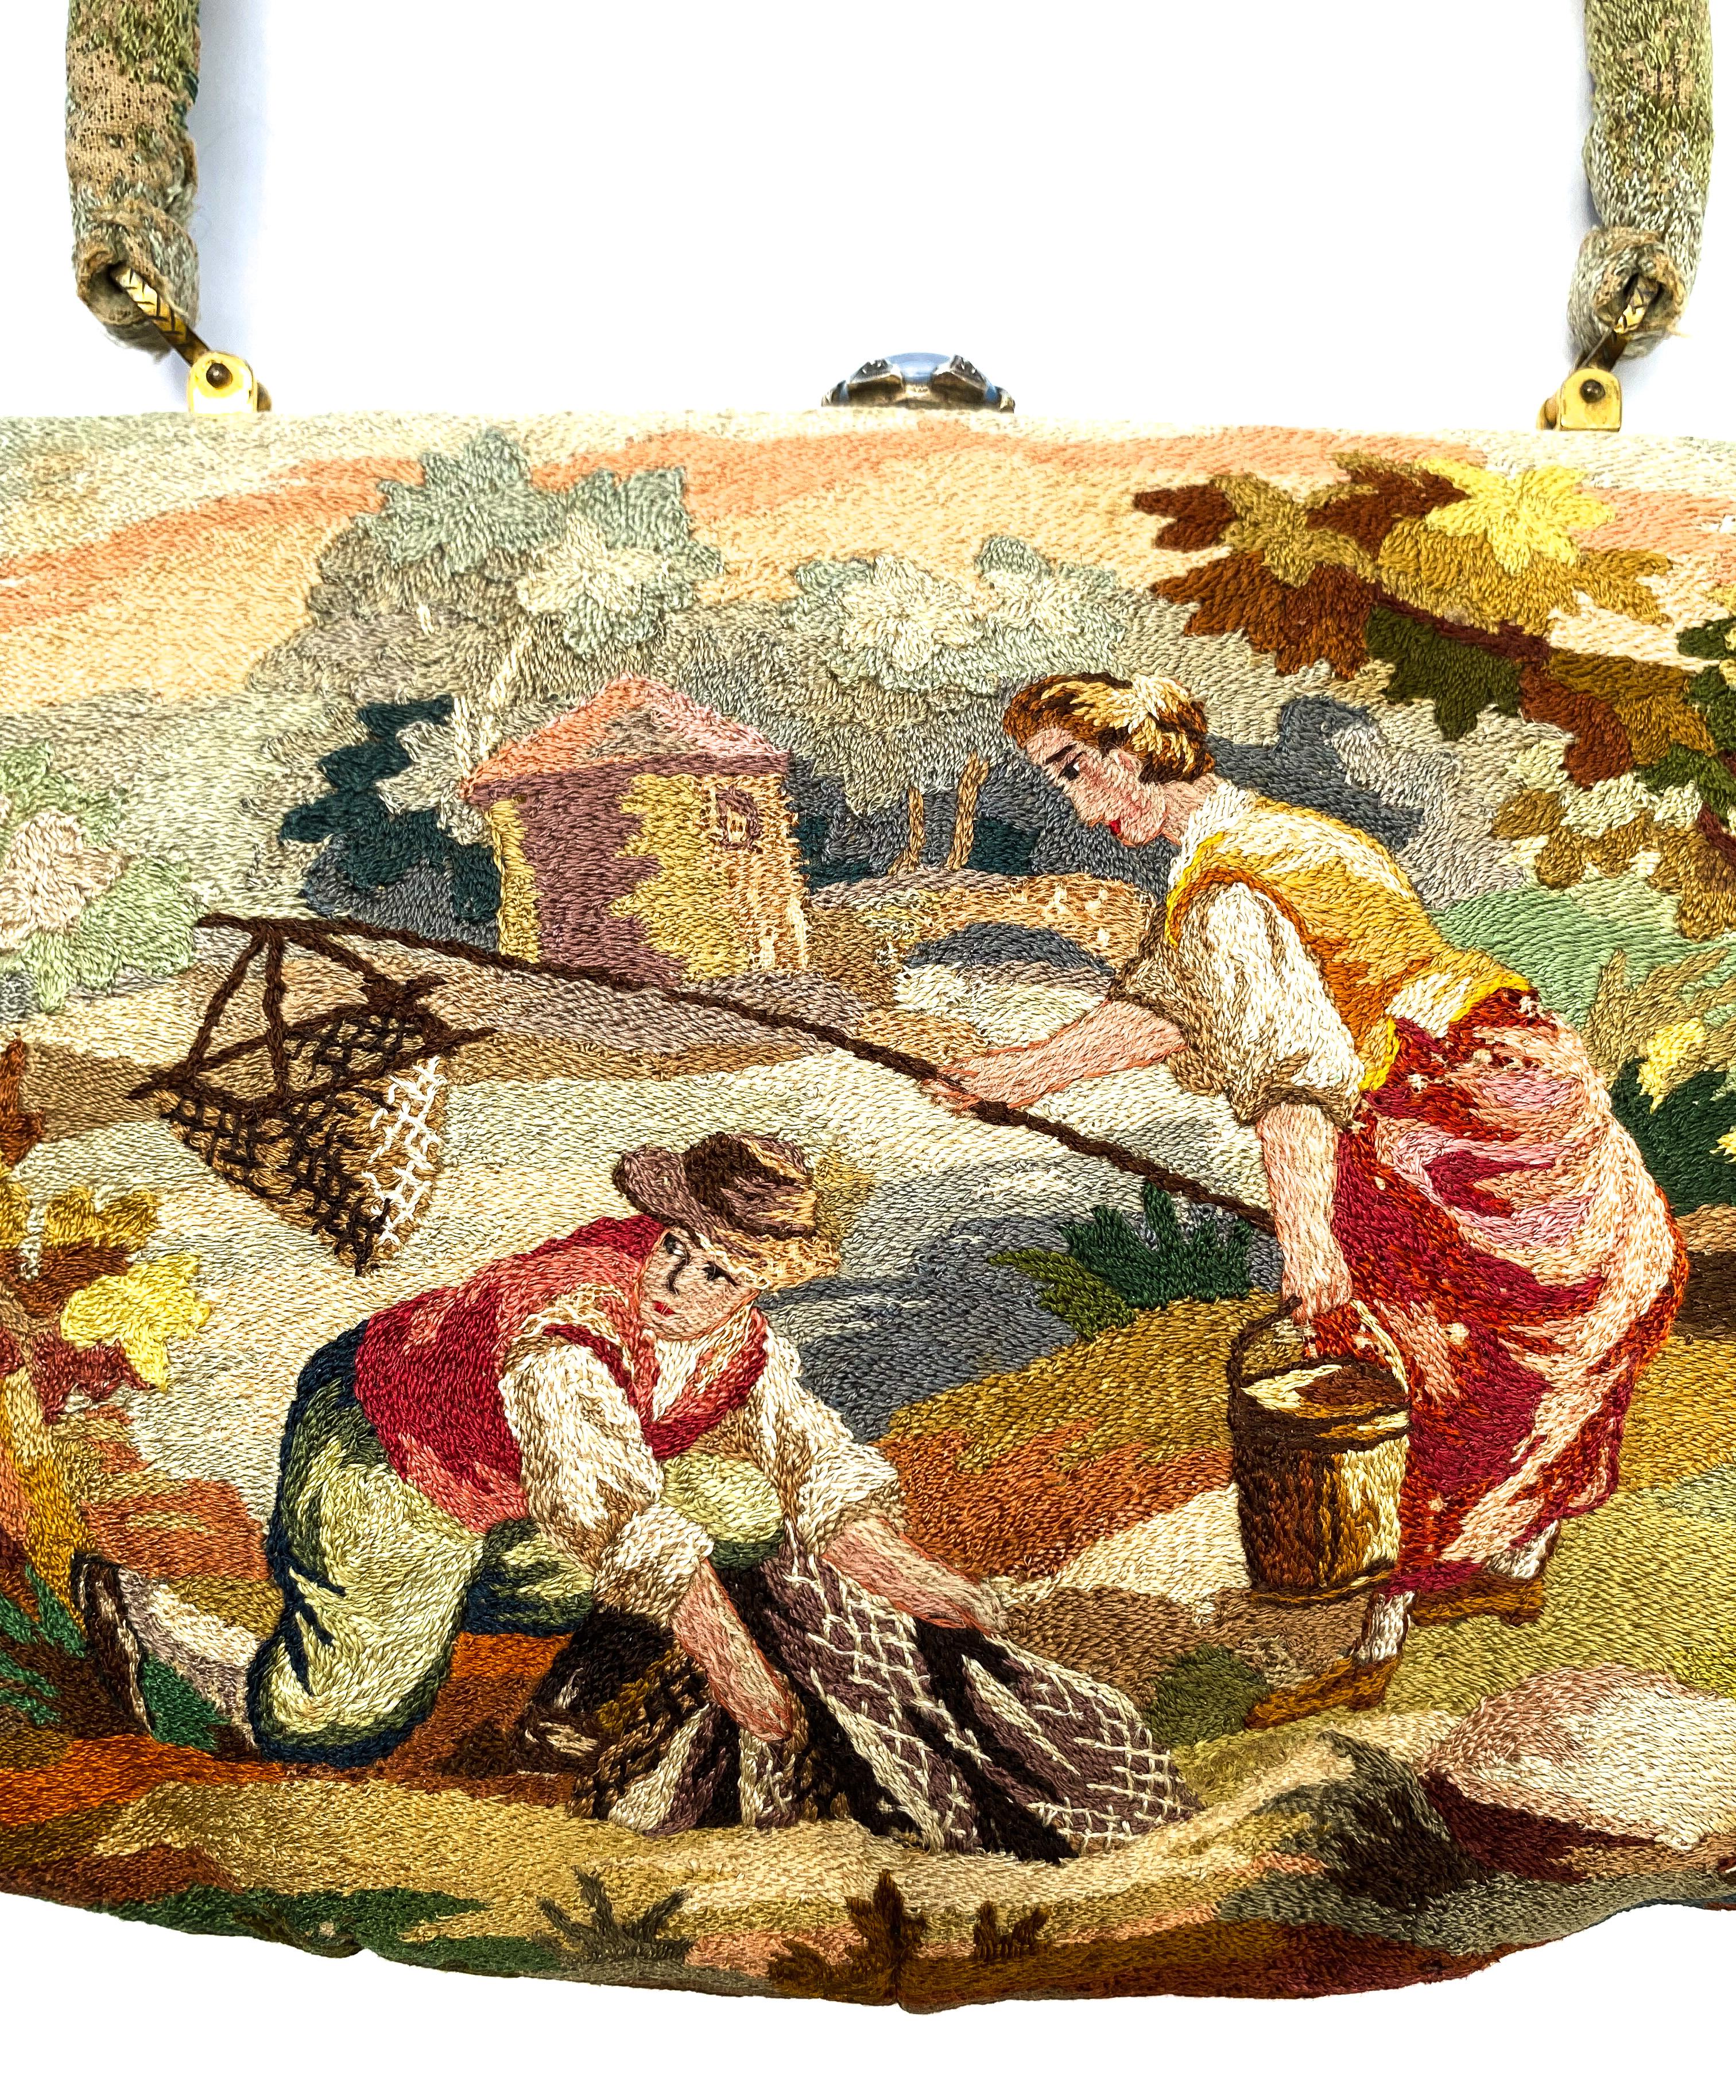 Un sac à main magnifiquement cousu à la main avec une charmante scène rustique antique avec deux personnages par les maîtres artisans et le fabricant de produits de luxe Morabito. Exécuté en soie, avec des coutures fines et variées, certaines en